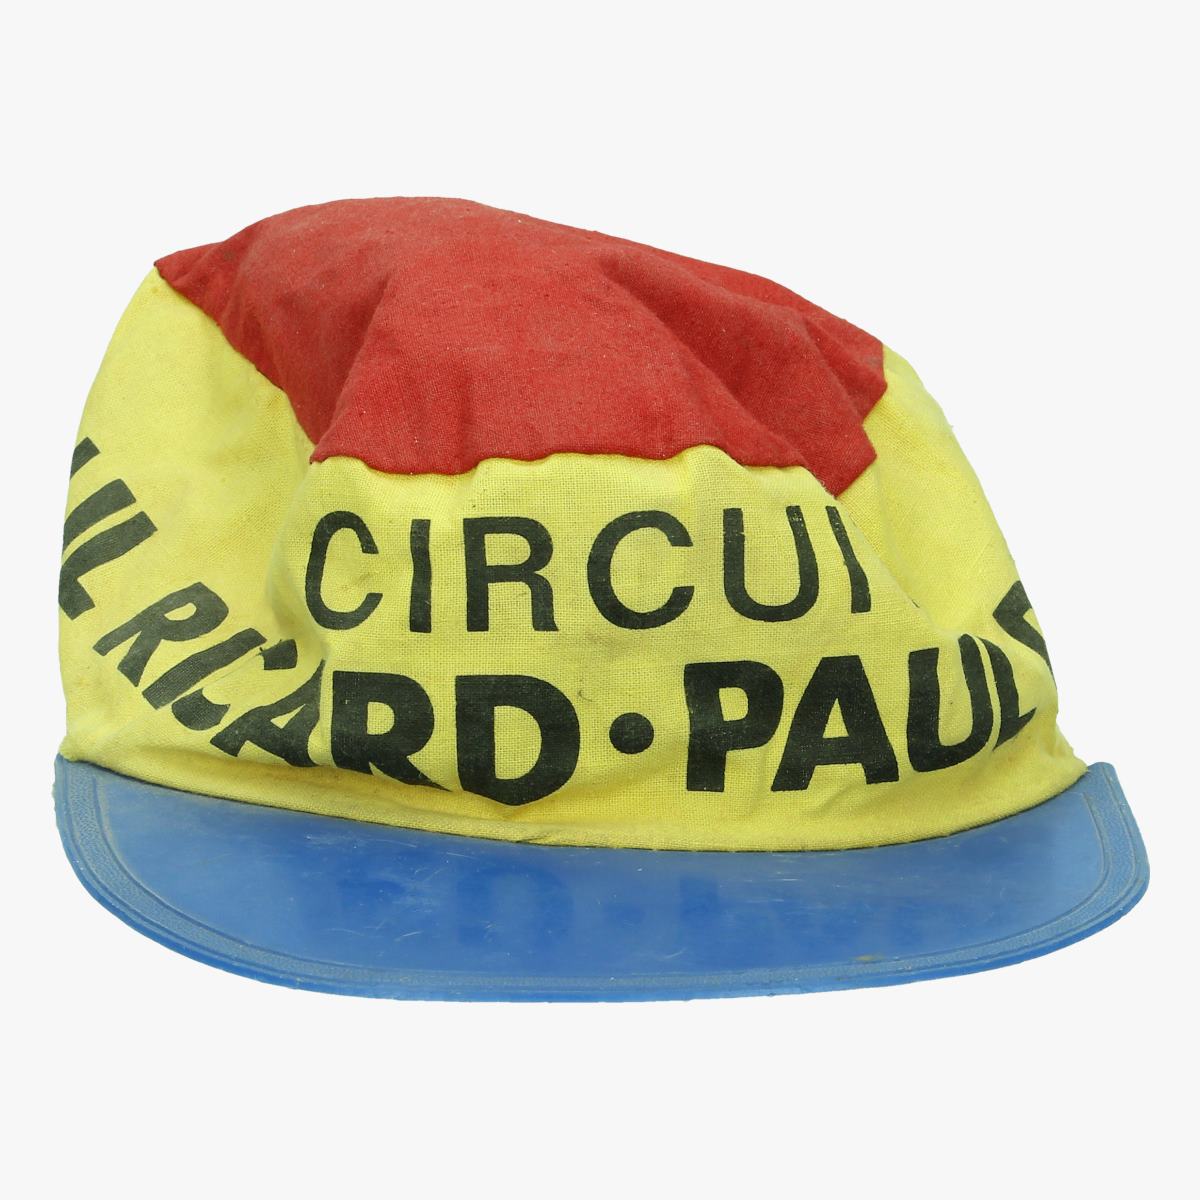 Afbeeldingen van oud wielrenners petje Circuit Paul Ricard